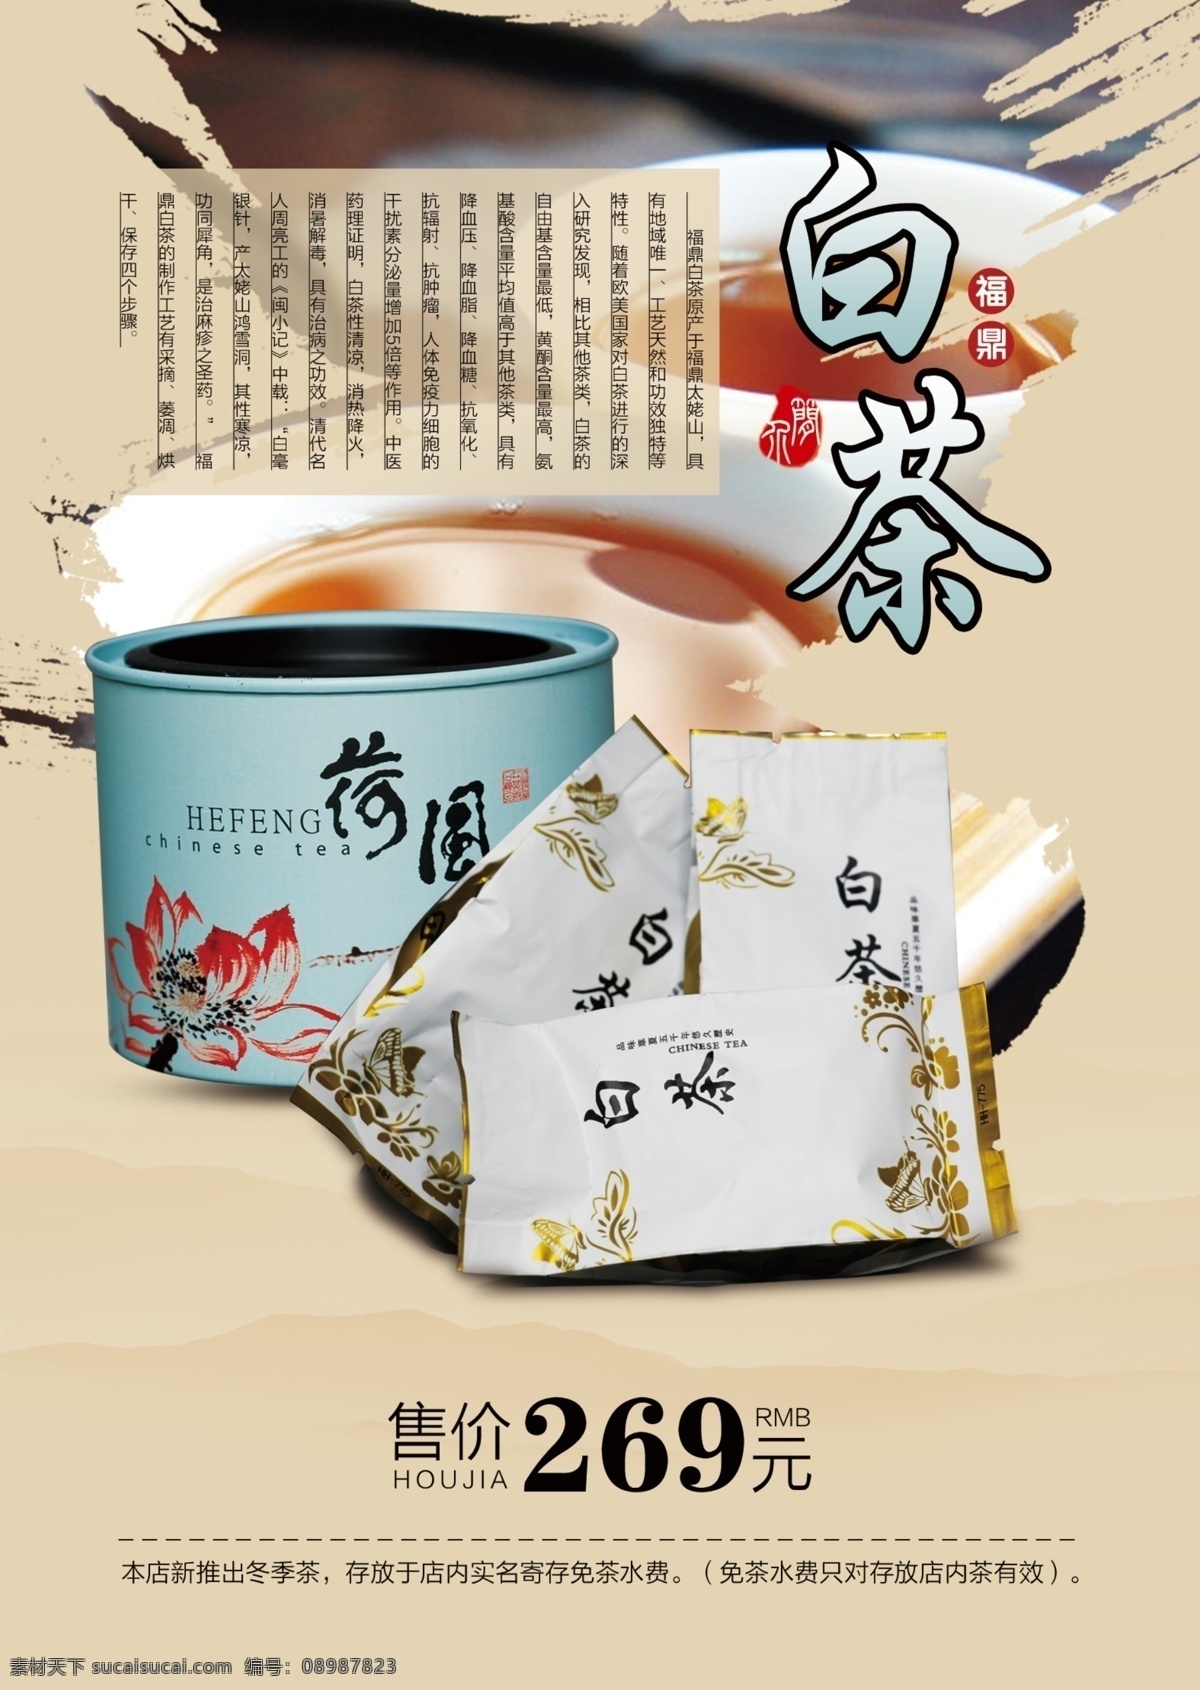 中国风 展板 茶文化 历史 大红袍 价格 白茶 价格图版 装饰 黑色